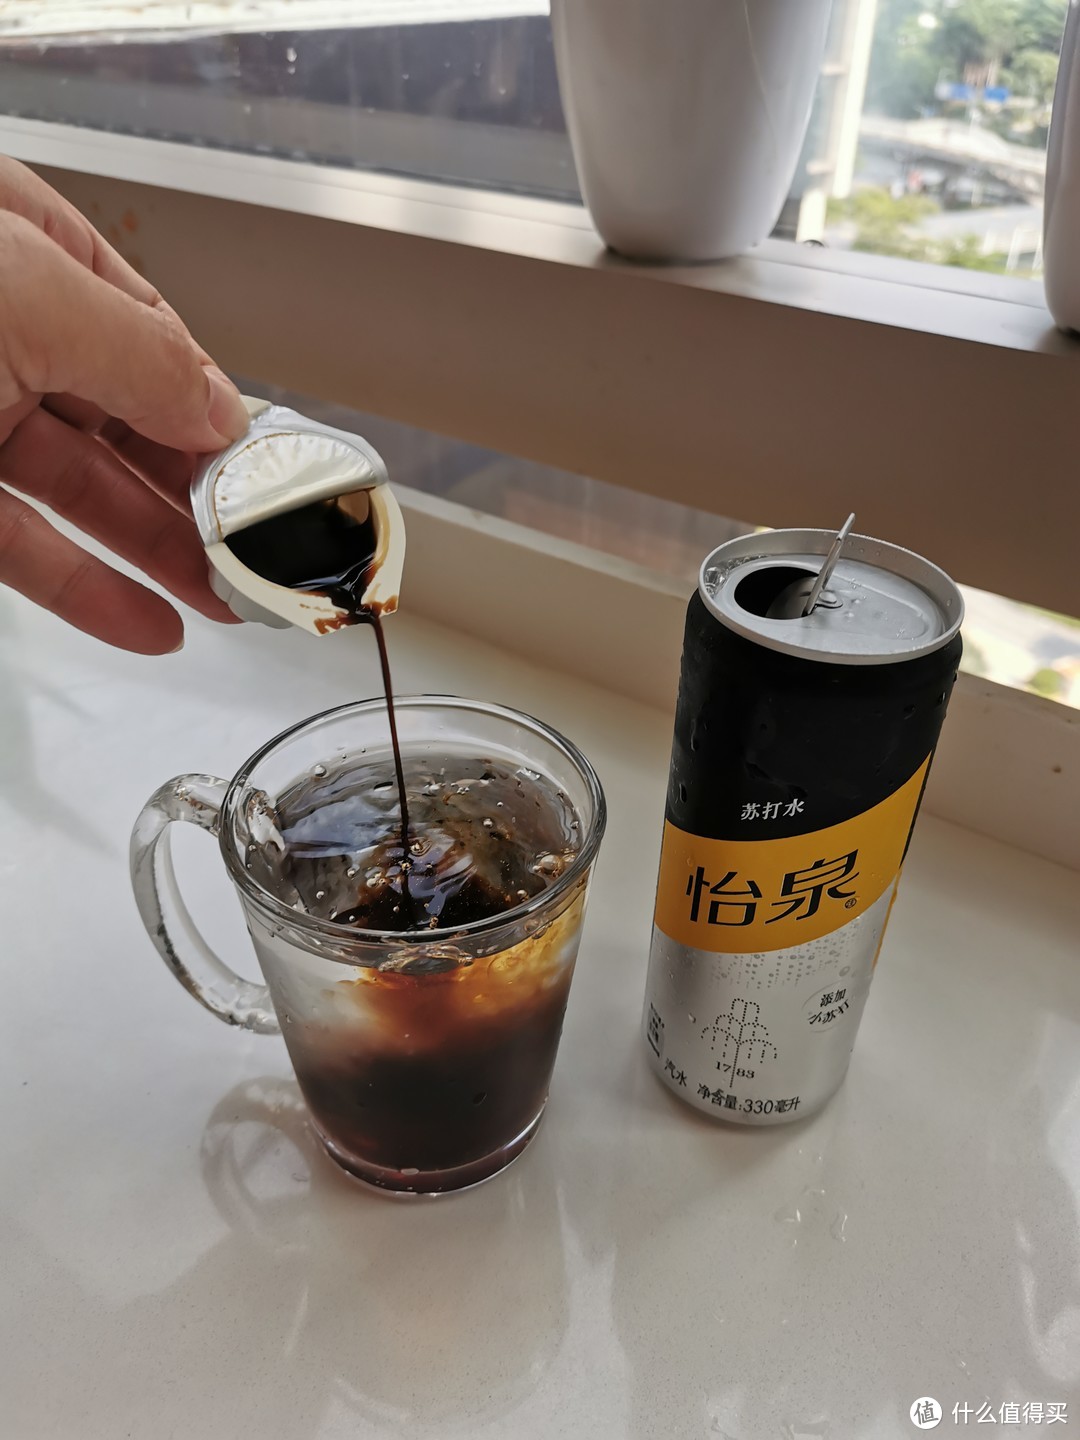 这才是隅田川 TASOGAREDE 液体浓缩胶囊咖啡的正确打开方式？